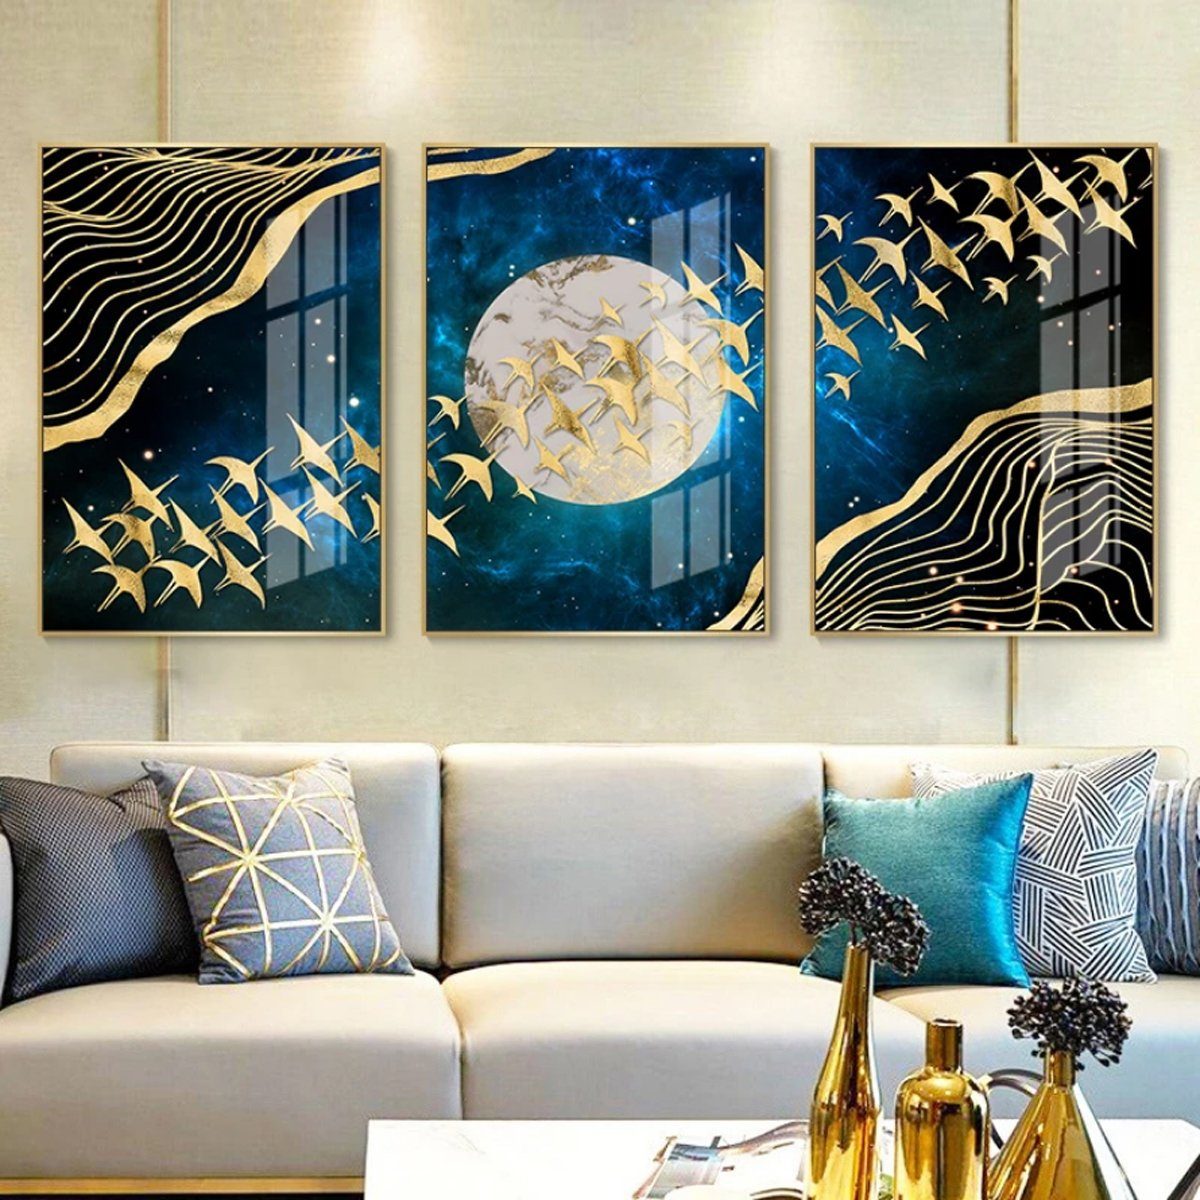 TPFLiving Kunstdruck (OHNE RAHMEN) Poster - Leinwand - Wandbild, Goldene Vögel auf blauem Hintergrund - Wanddeko Wohnzimmer - (7 verschiedene Größen zur Auswahl - Auch im günstigen 3-er Set), Farben: Gold, Blau - Größe: 30x40cm